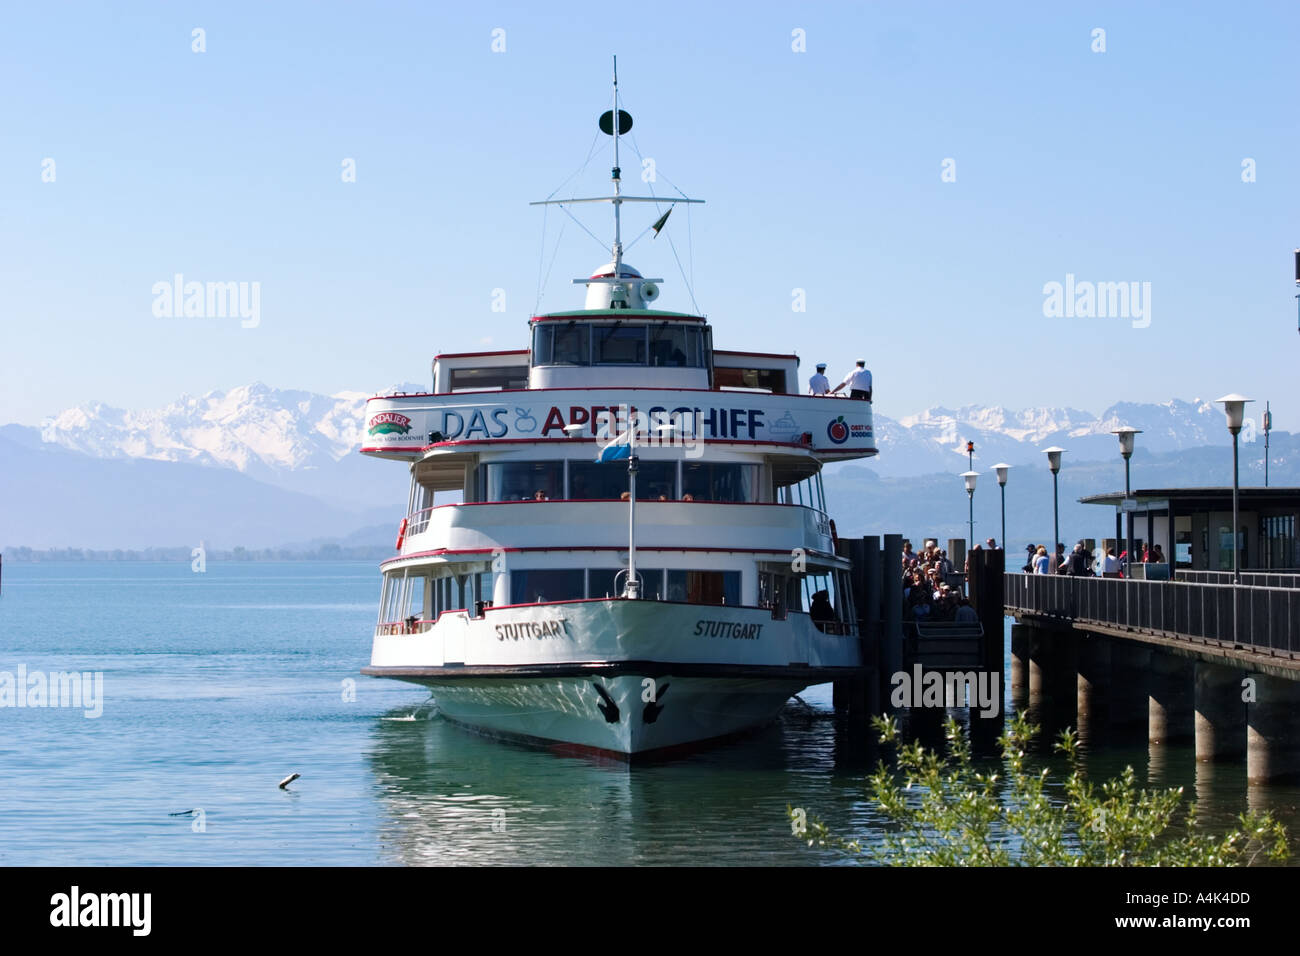 Wasserburg presso il lago di Costanza nave passeggeri in Germania Foto Stock